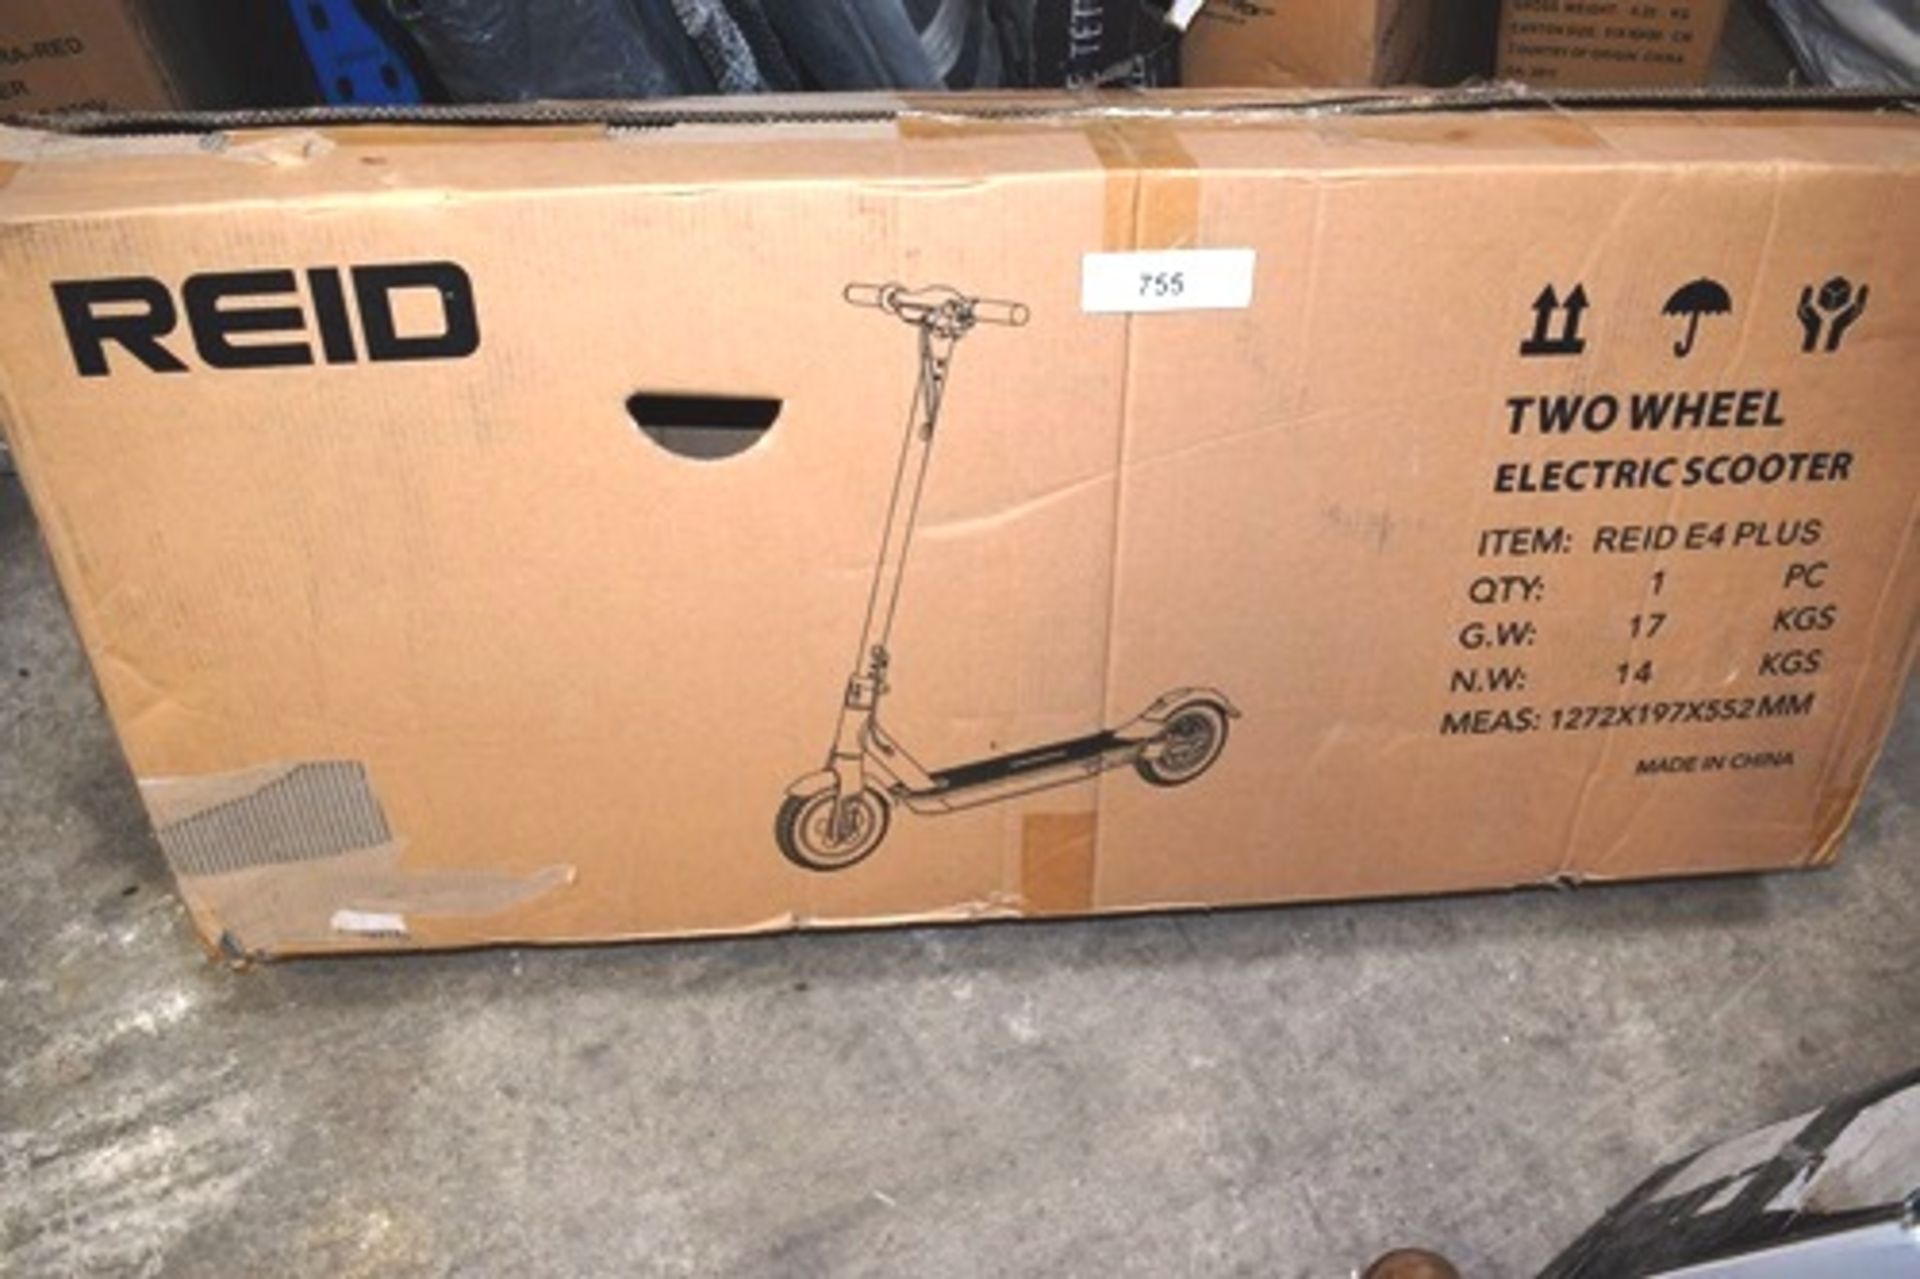 1 x Reid two-wheel electric scooter, model Reid E4 Plus - New in box (GS16)